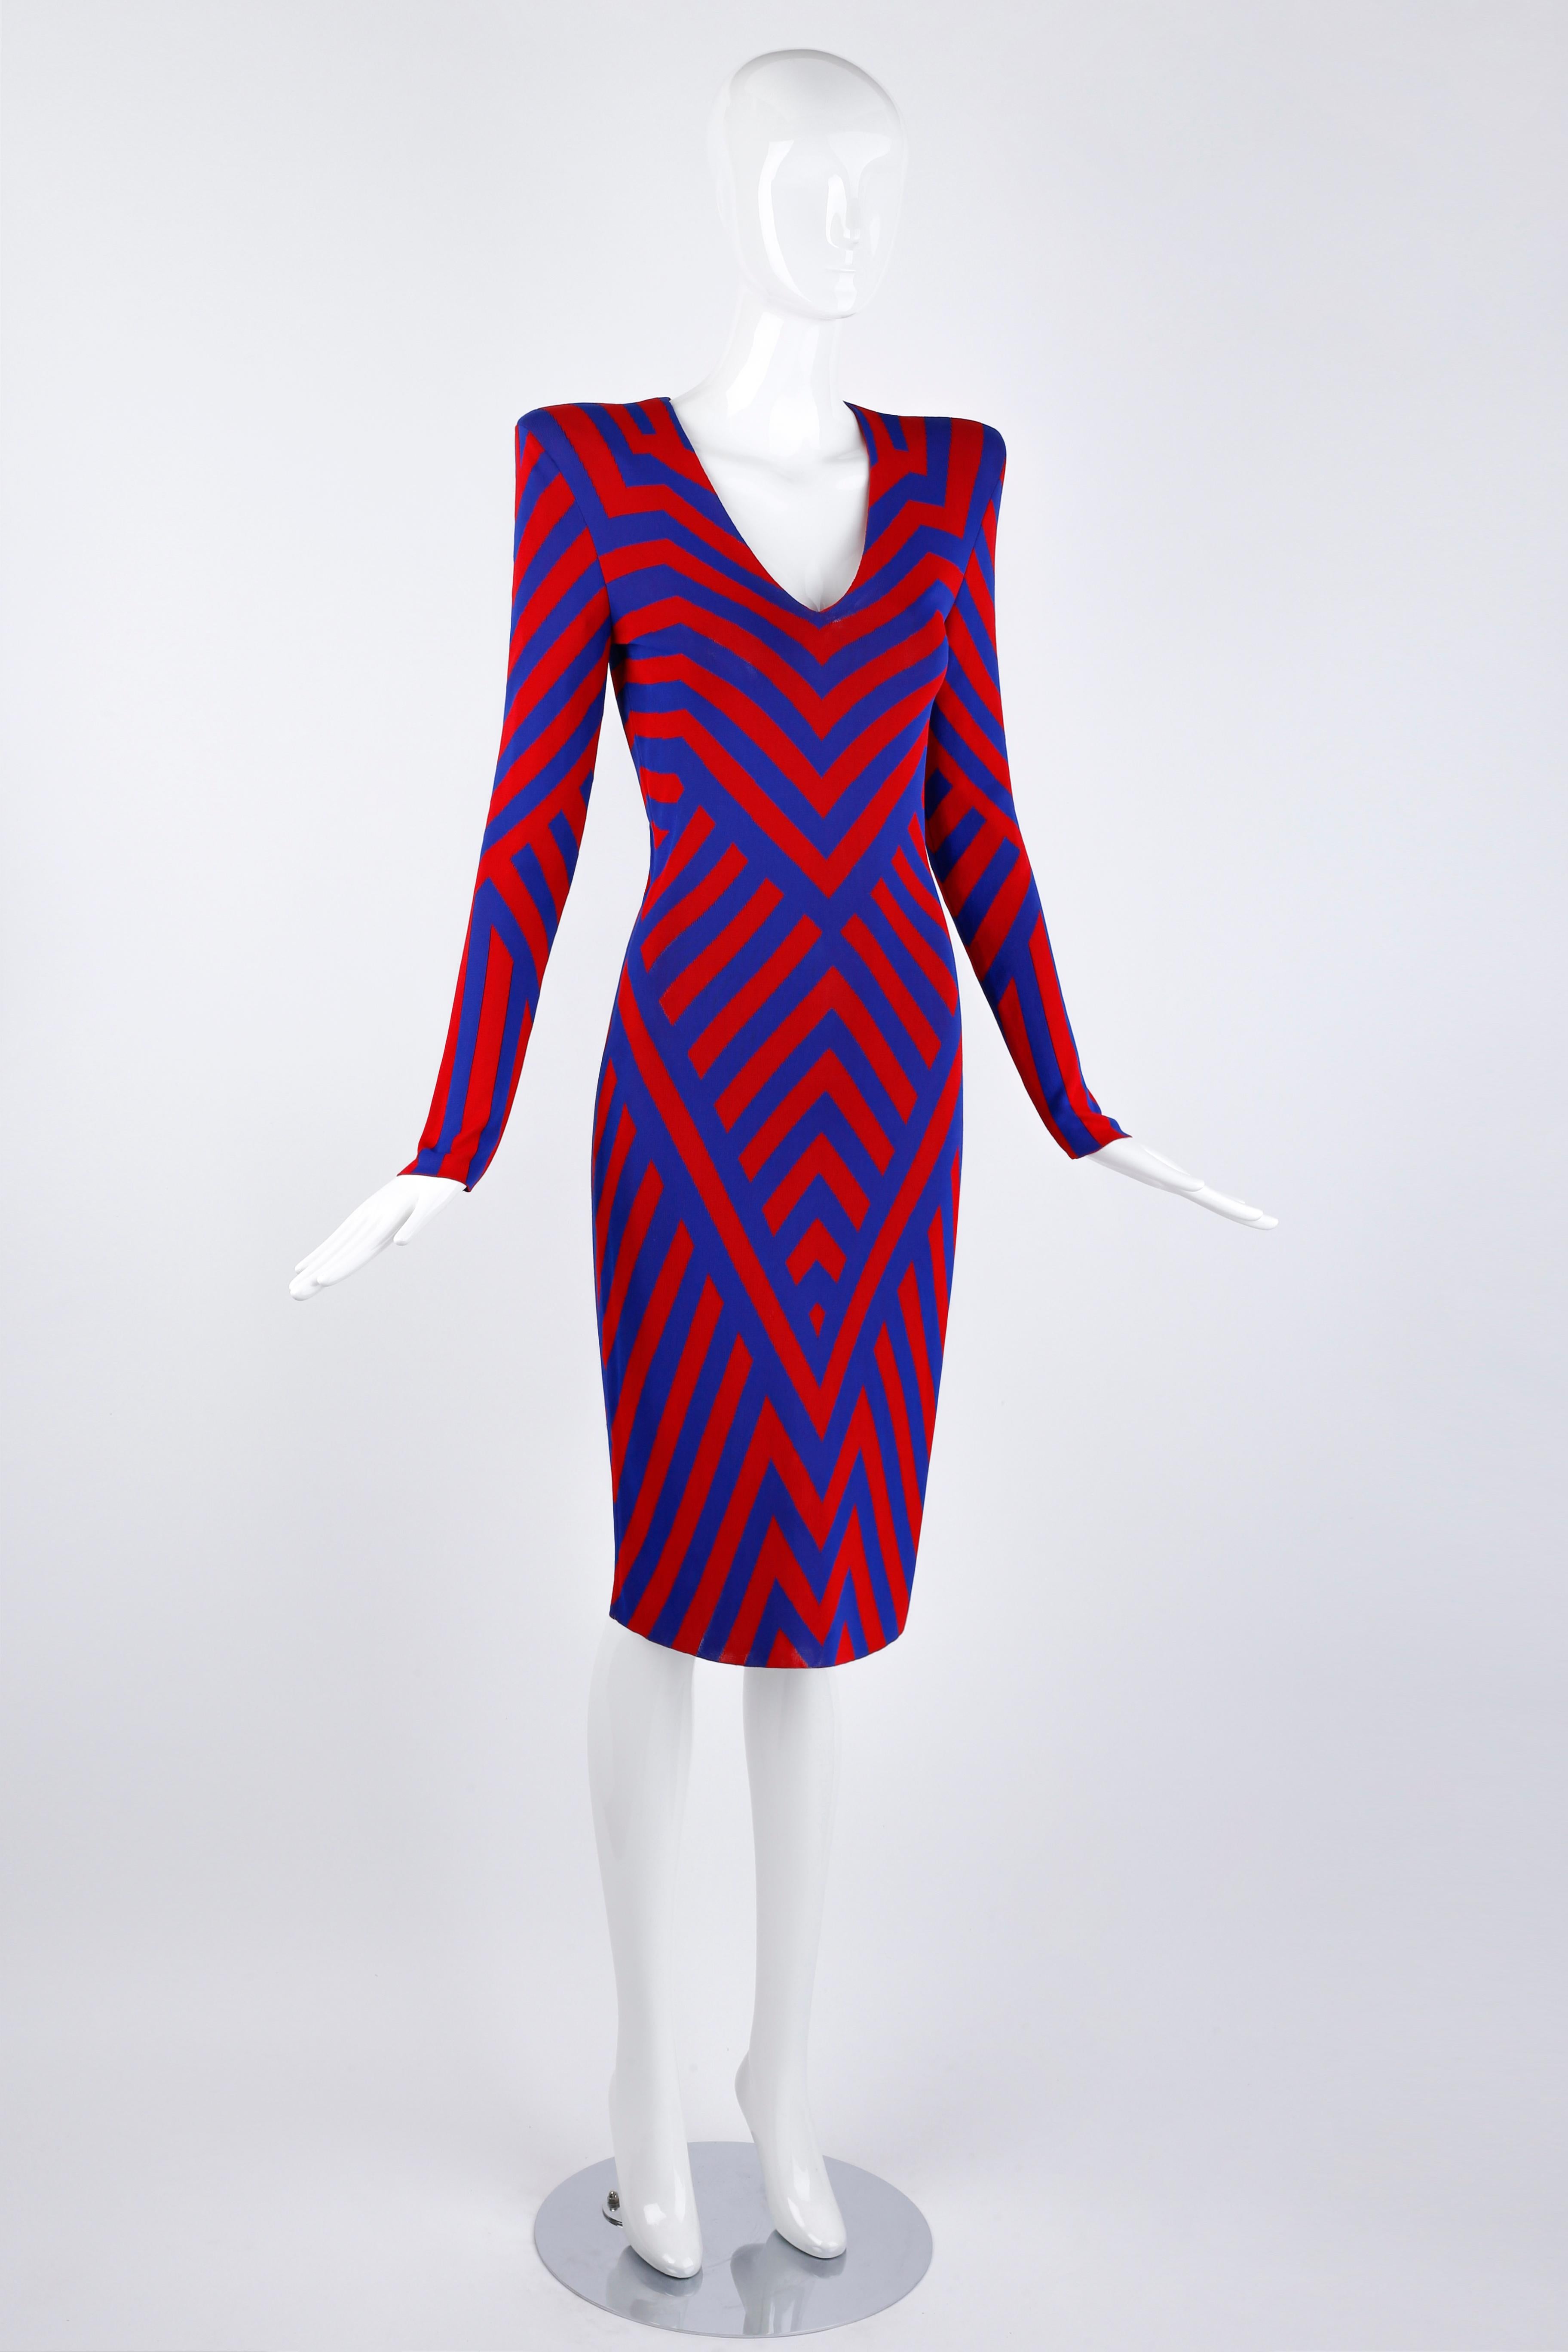 Conçue par Alexander McQueen pour la collection Resort 2010, Look #2. Cette superbe robe fourreau en tricot présente un motif graphique de style op-art composé de lignes rouges et bleues contrastées, de chevrons et de lignes diagonales qui mettent